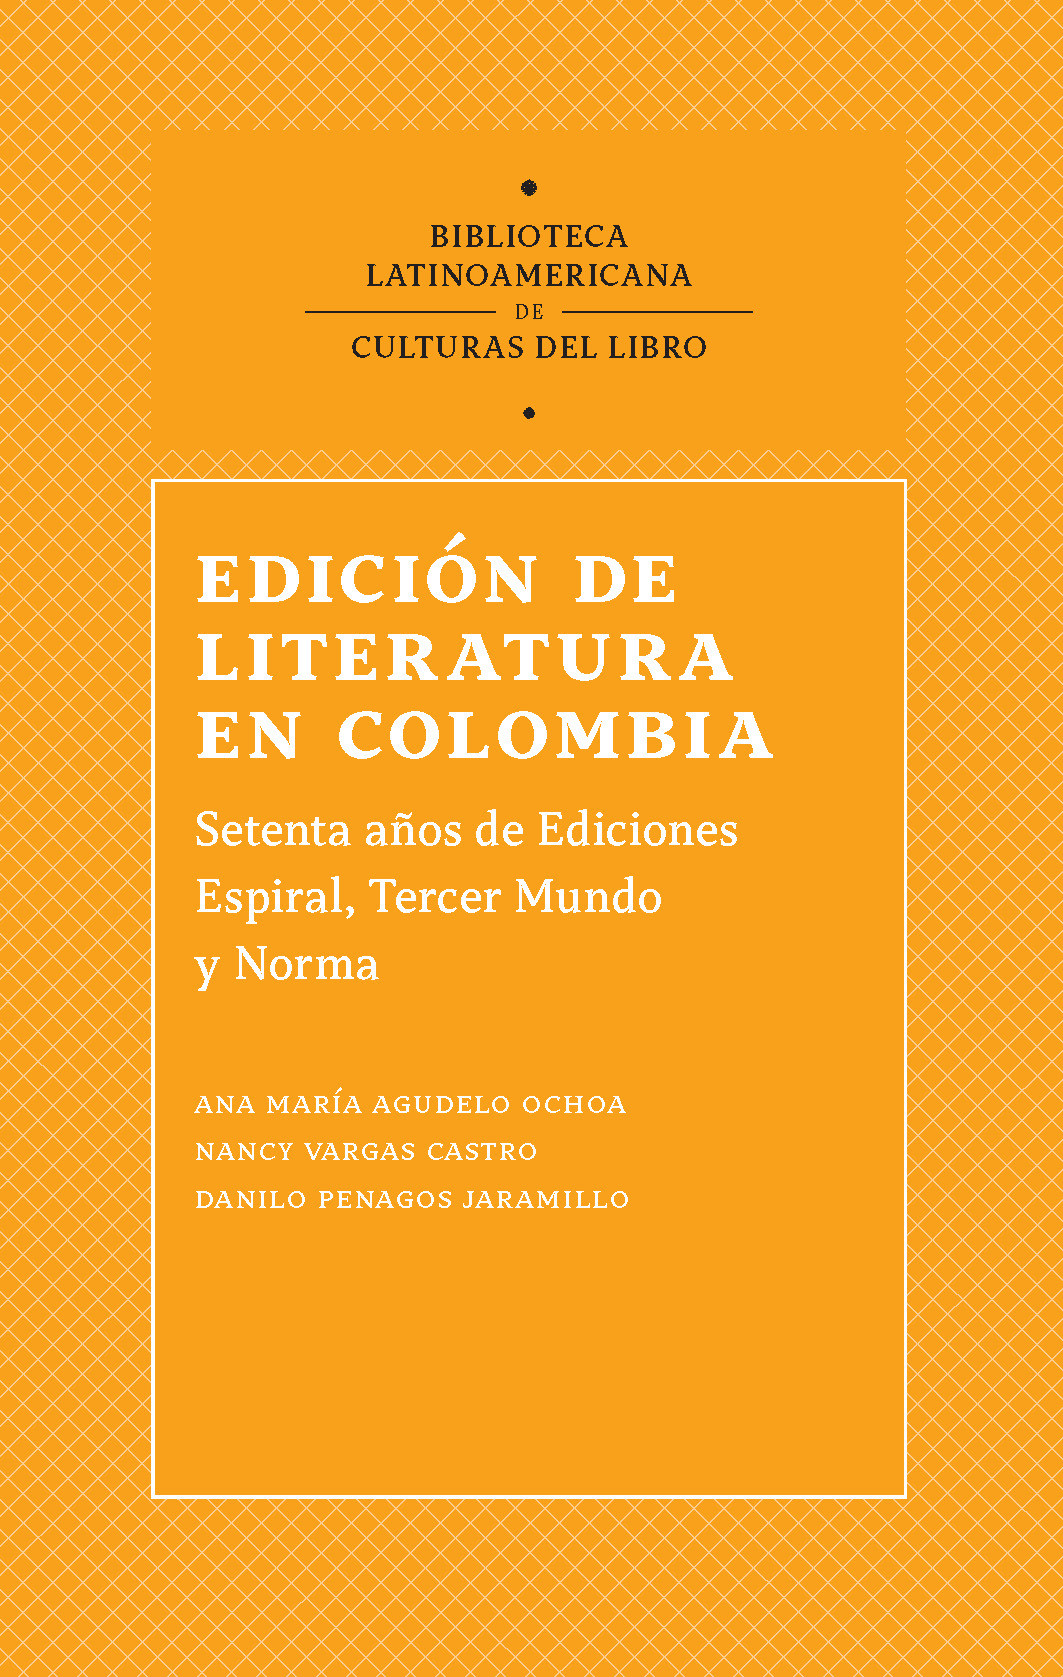 Imagen de portada del libro Edición de literatura en Colombia, 1944-2016